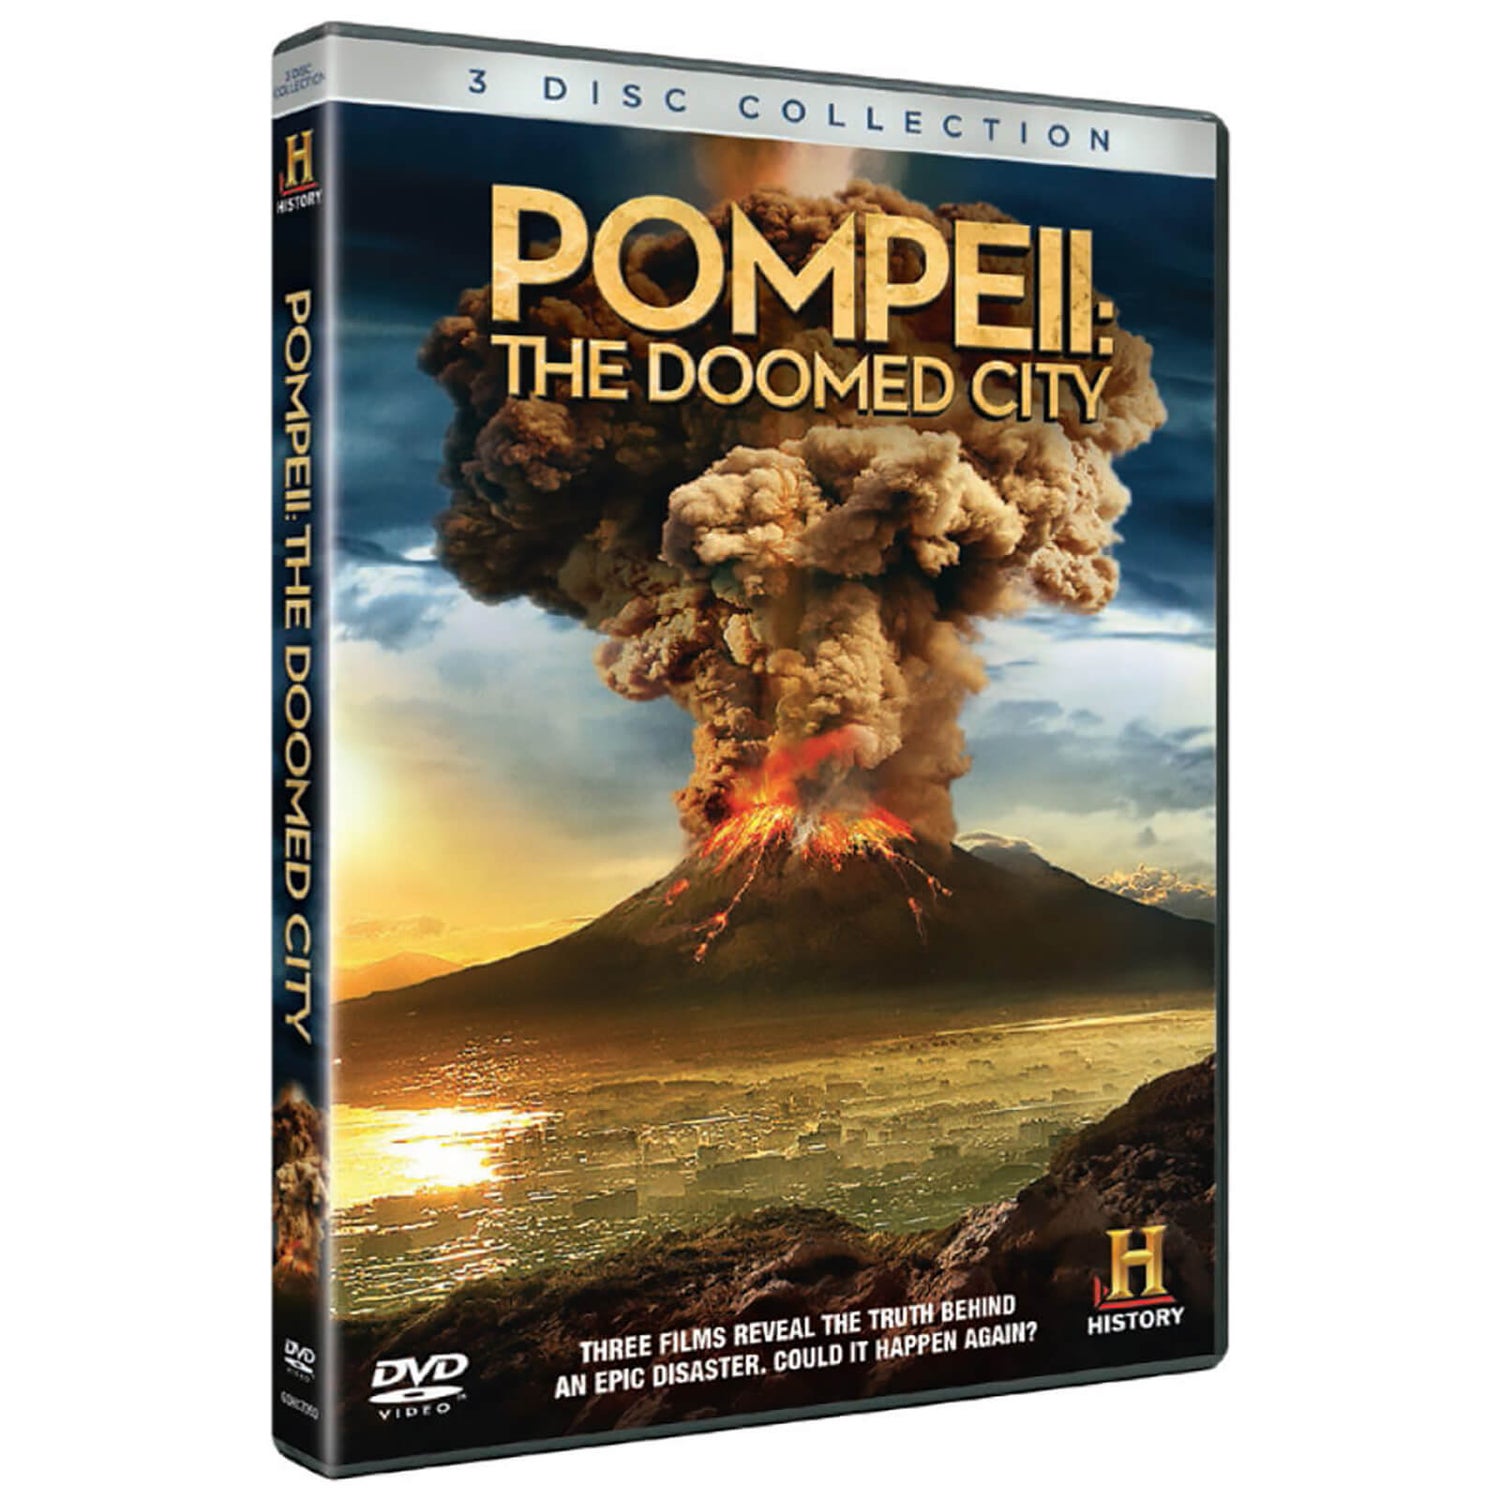 Pompeii: The Doomed City